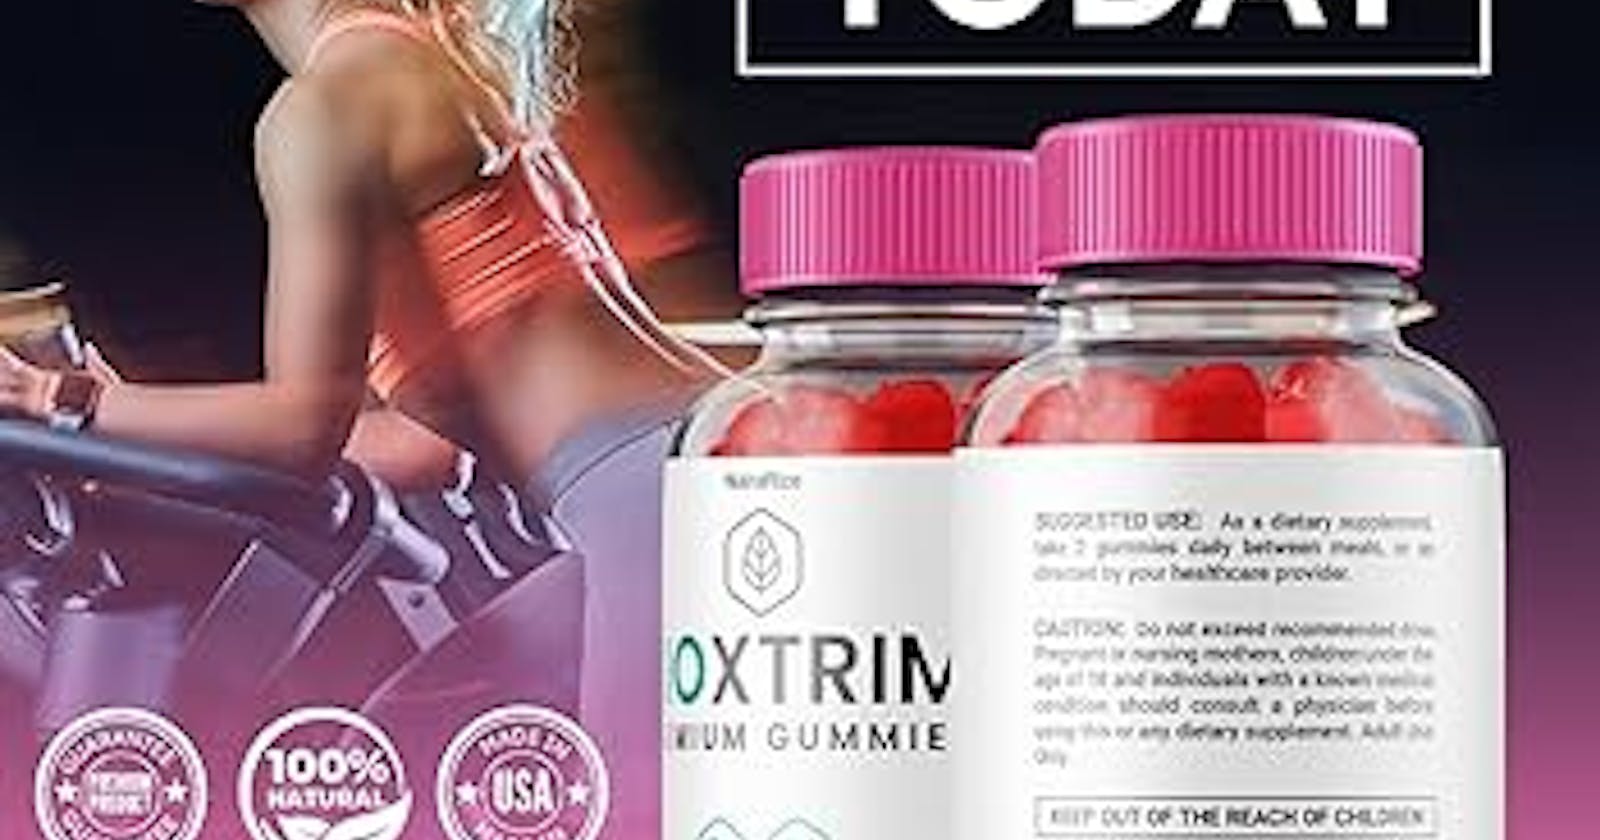 BioXtrim Keto Gummies Review - Scam Brand or Safe TruBio Keto Weight Loss Gummy?